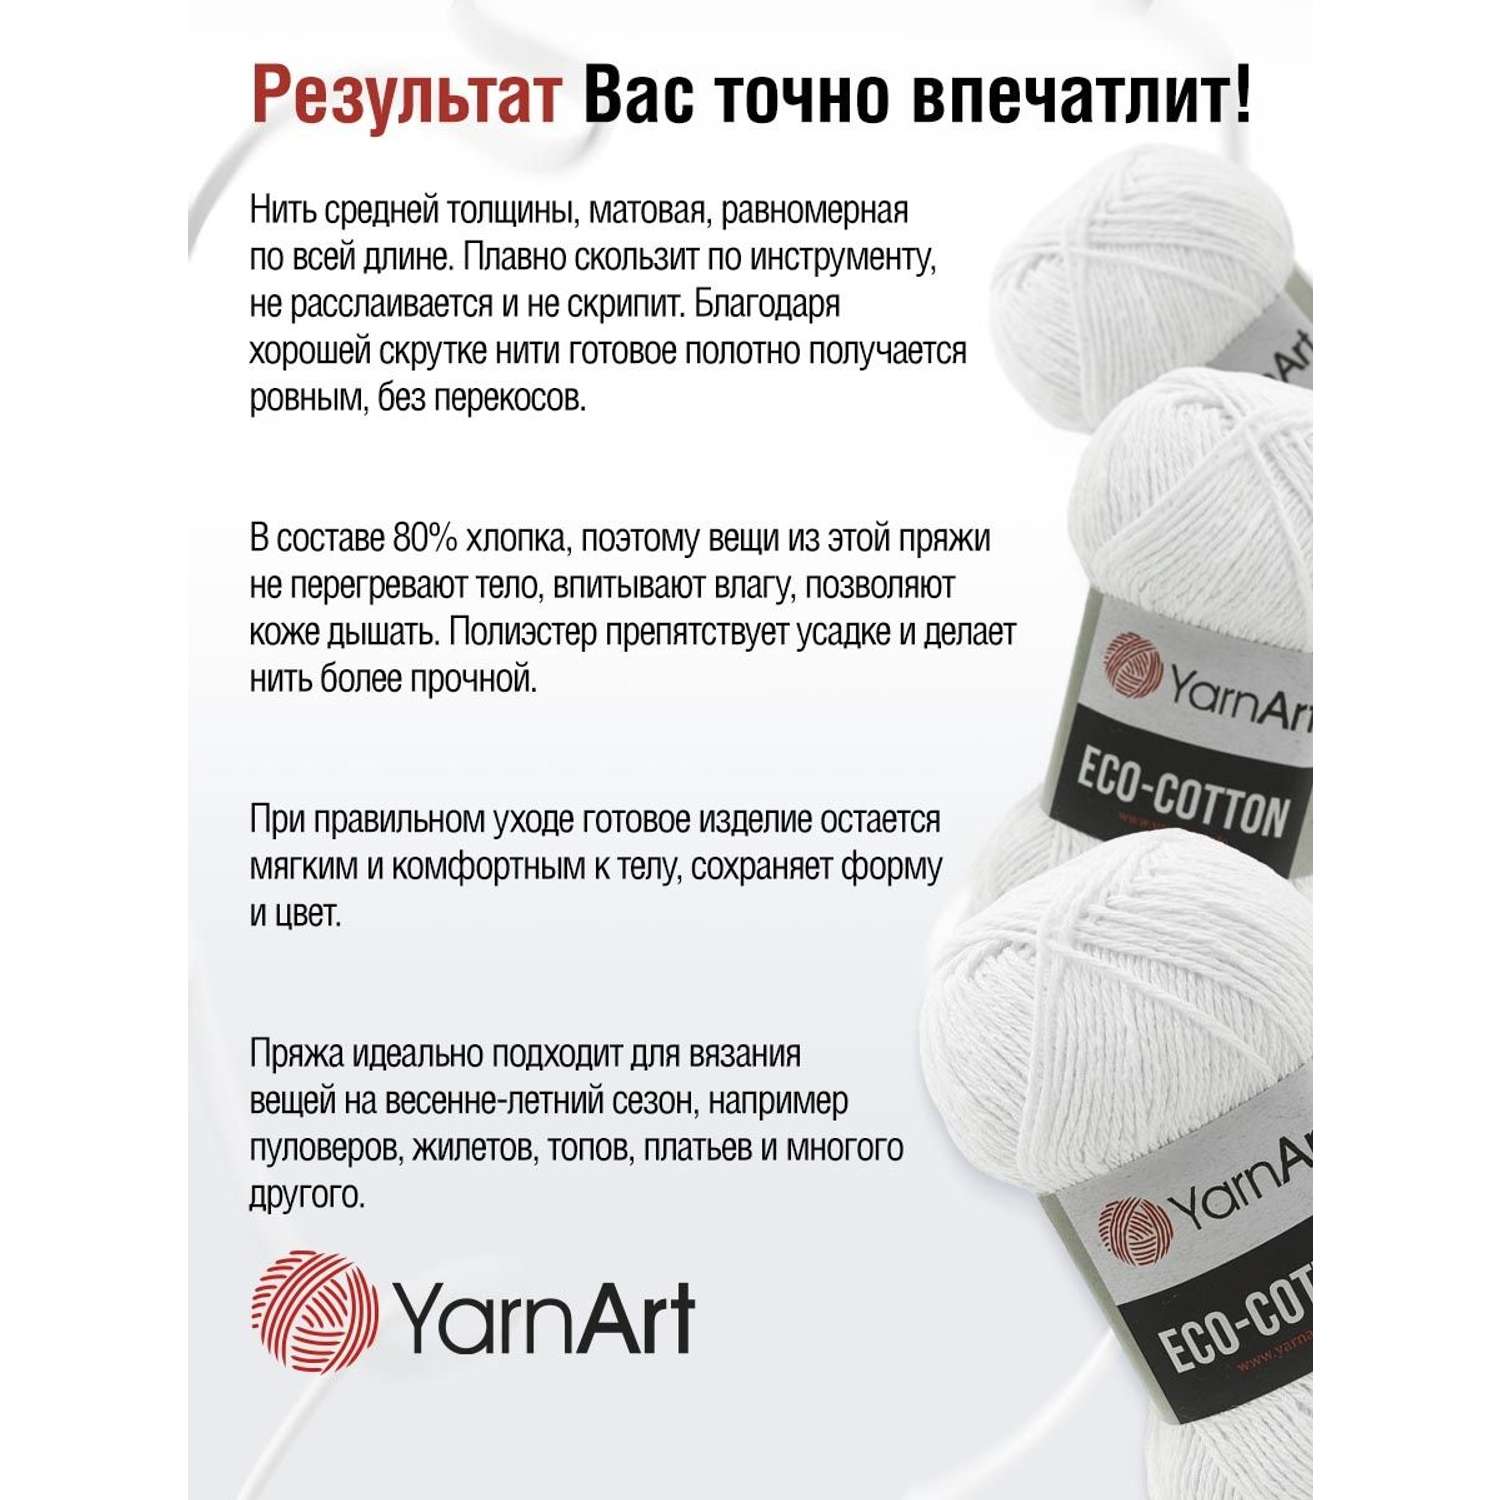 Пряжа YarnArt Eco Cotton комфортная для летних вещей 100 г 220 м 760 белый 5 мотков - фото 4